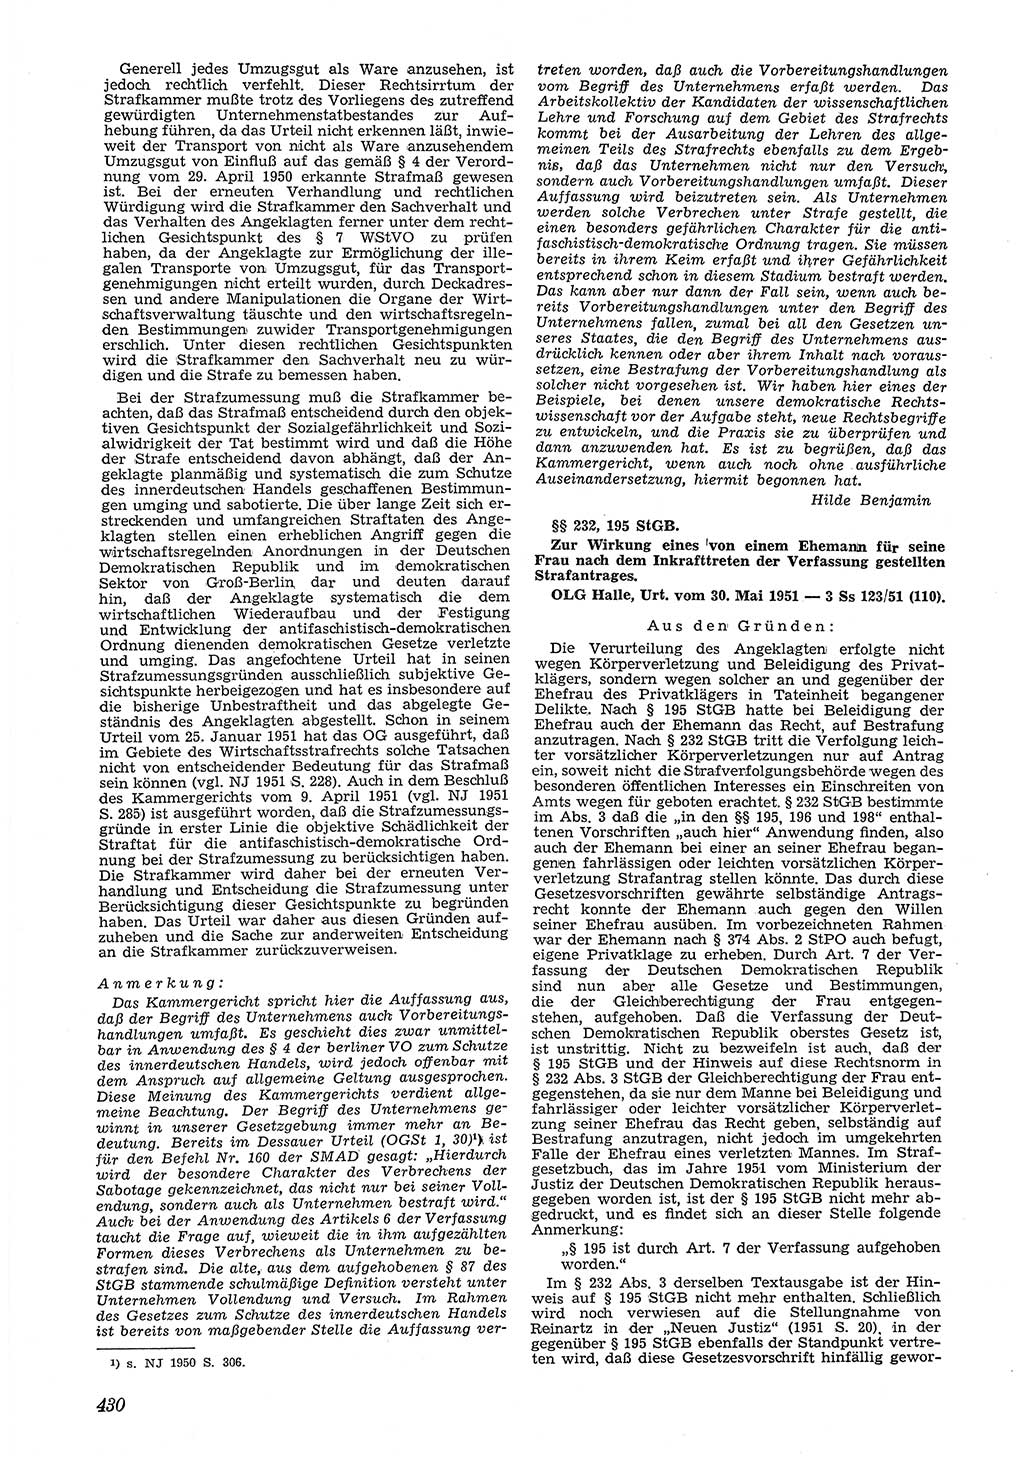 Neue Justiz (NJ), Zeitschrift für Recht und Rechtswissenschaft [Deutsche Demokratische Republik (DDR)], 5. Jahrgang 1951, Seite 430 (NJ DDR 1951, S. 430)